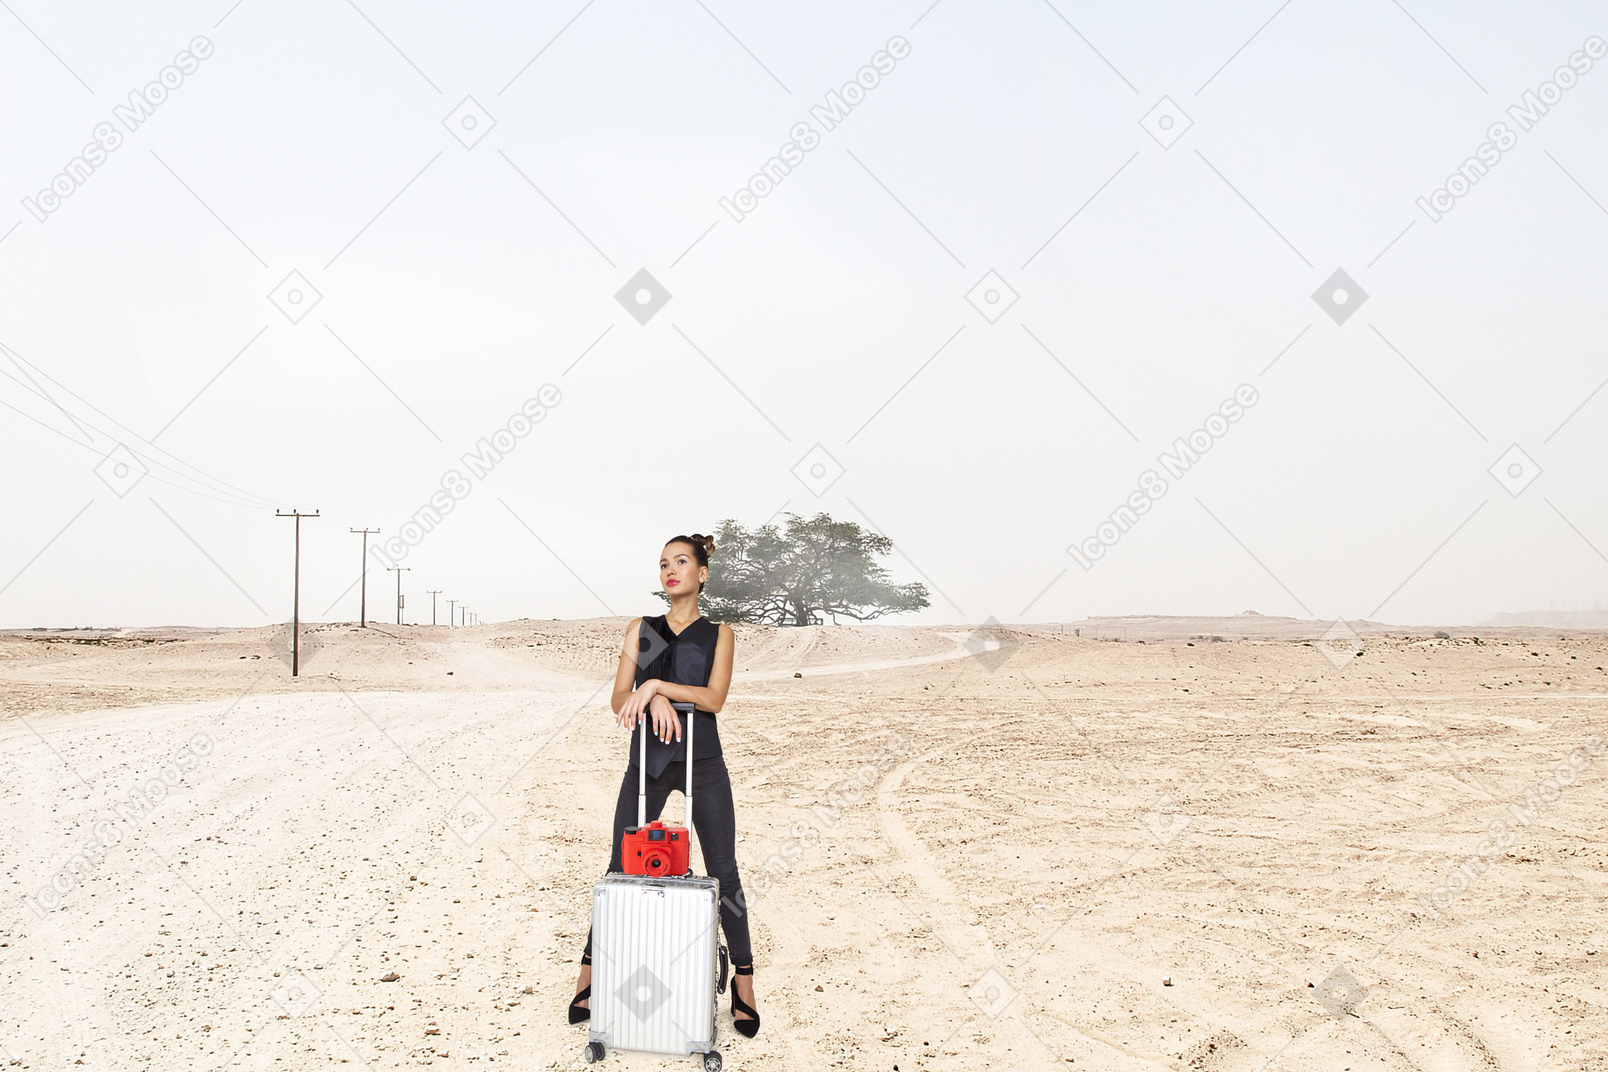 Mulher em pé com uma mala no deserto